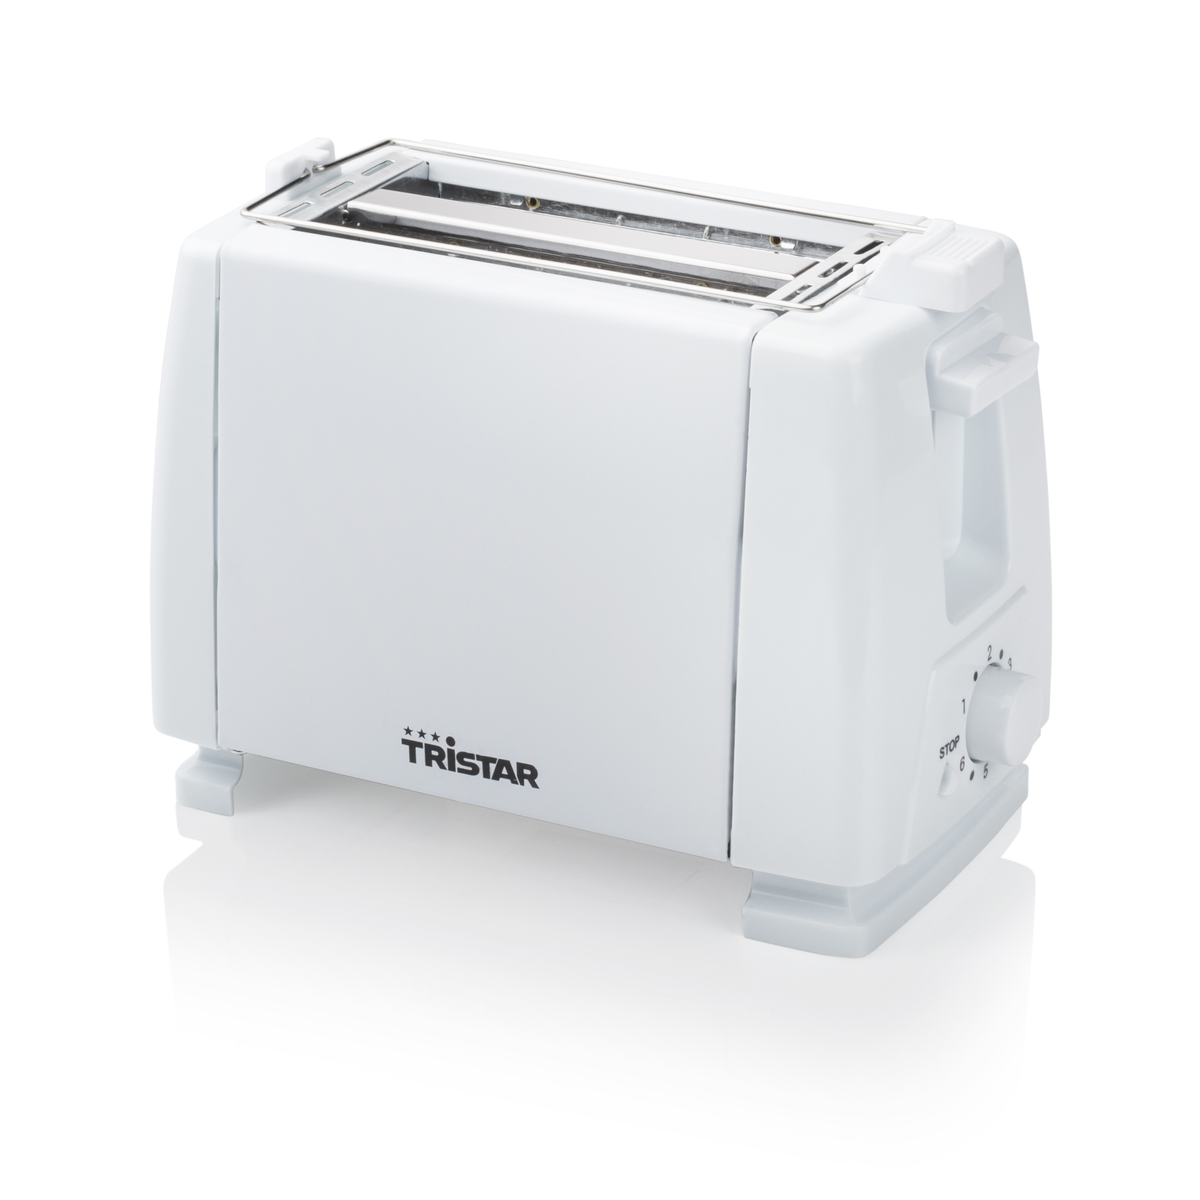 Watt, Weiß BR-1009 TRISTAR 2) Toaster (650 Schlitze: